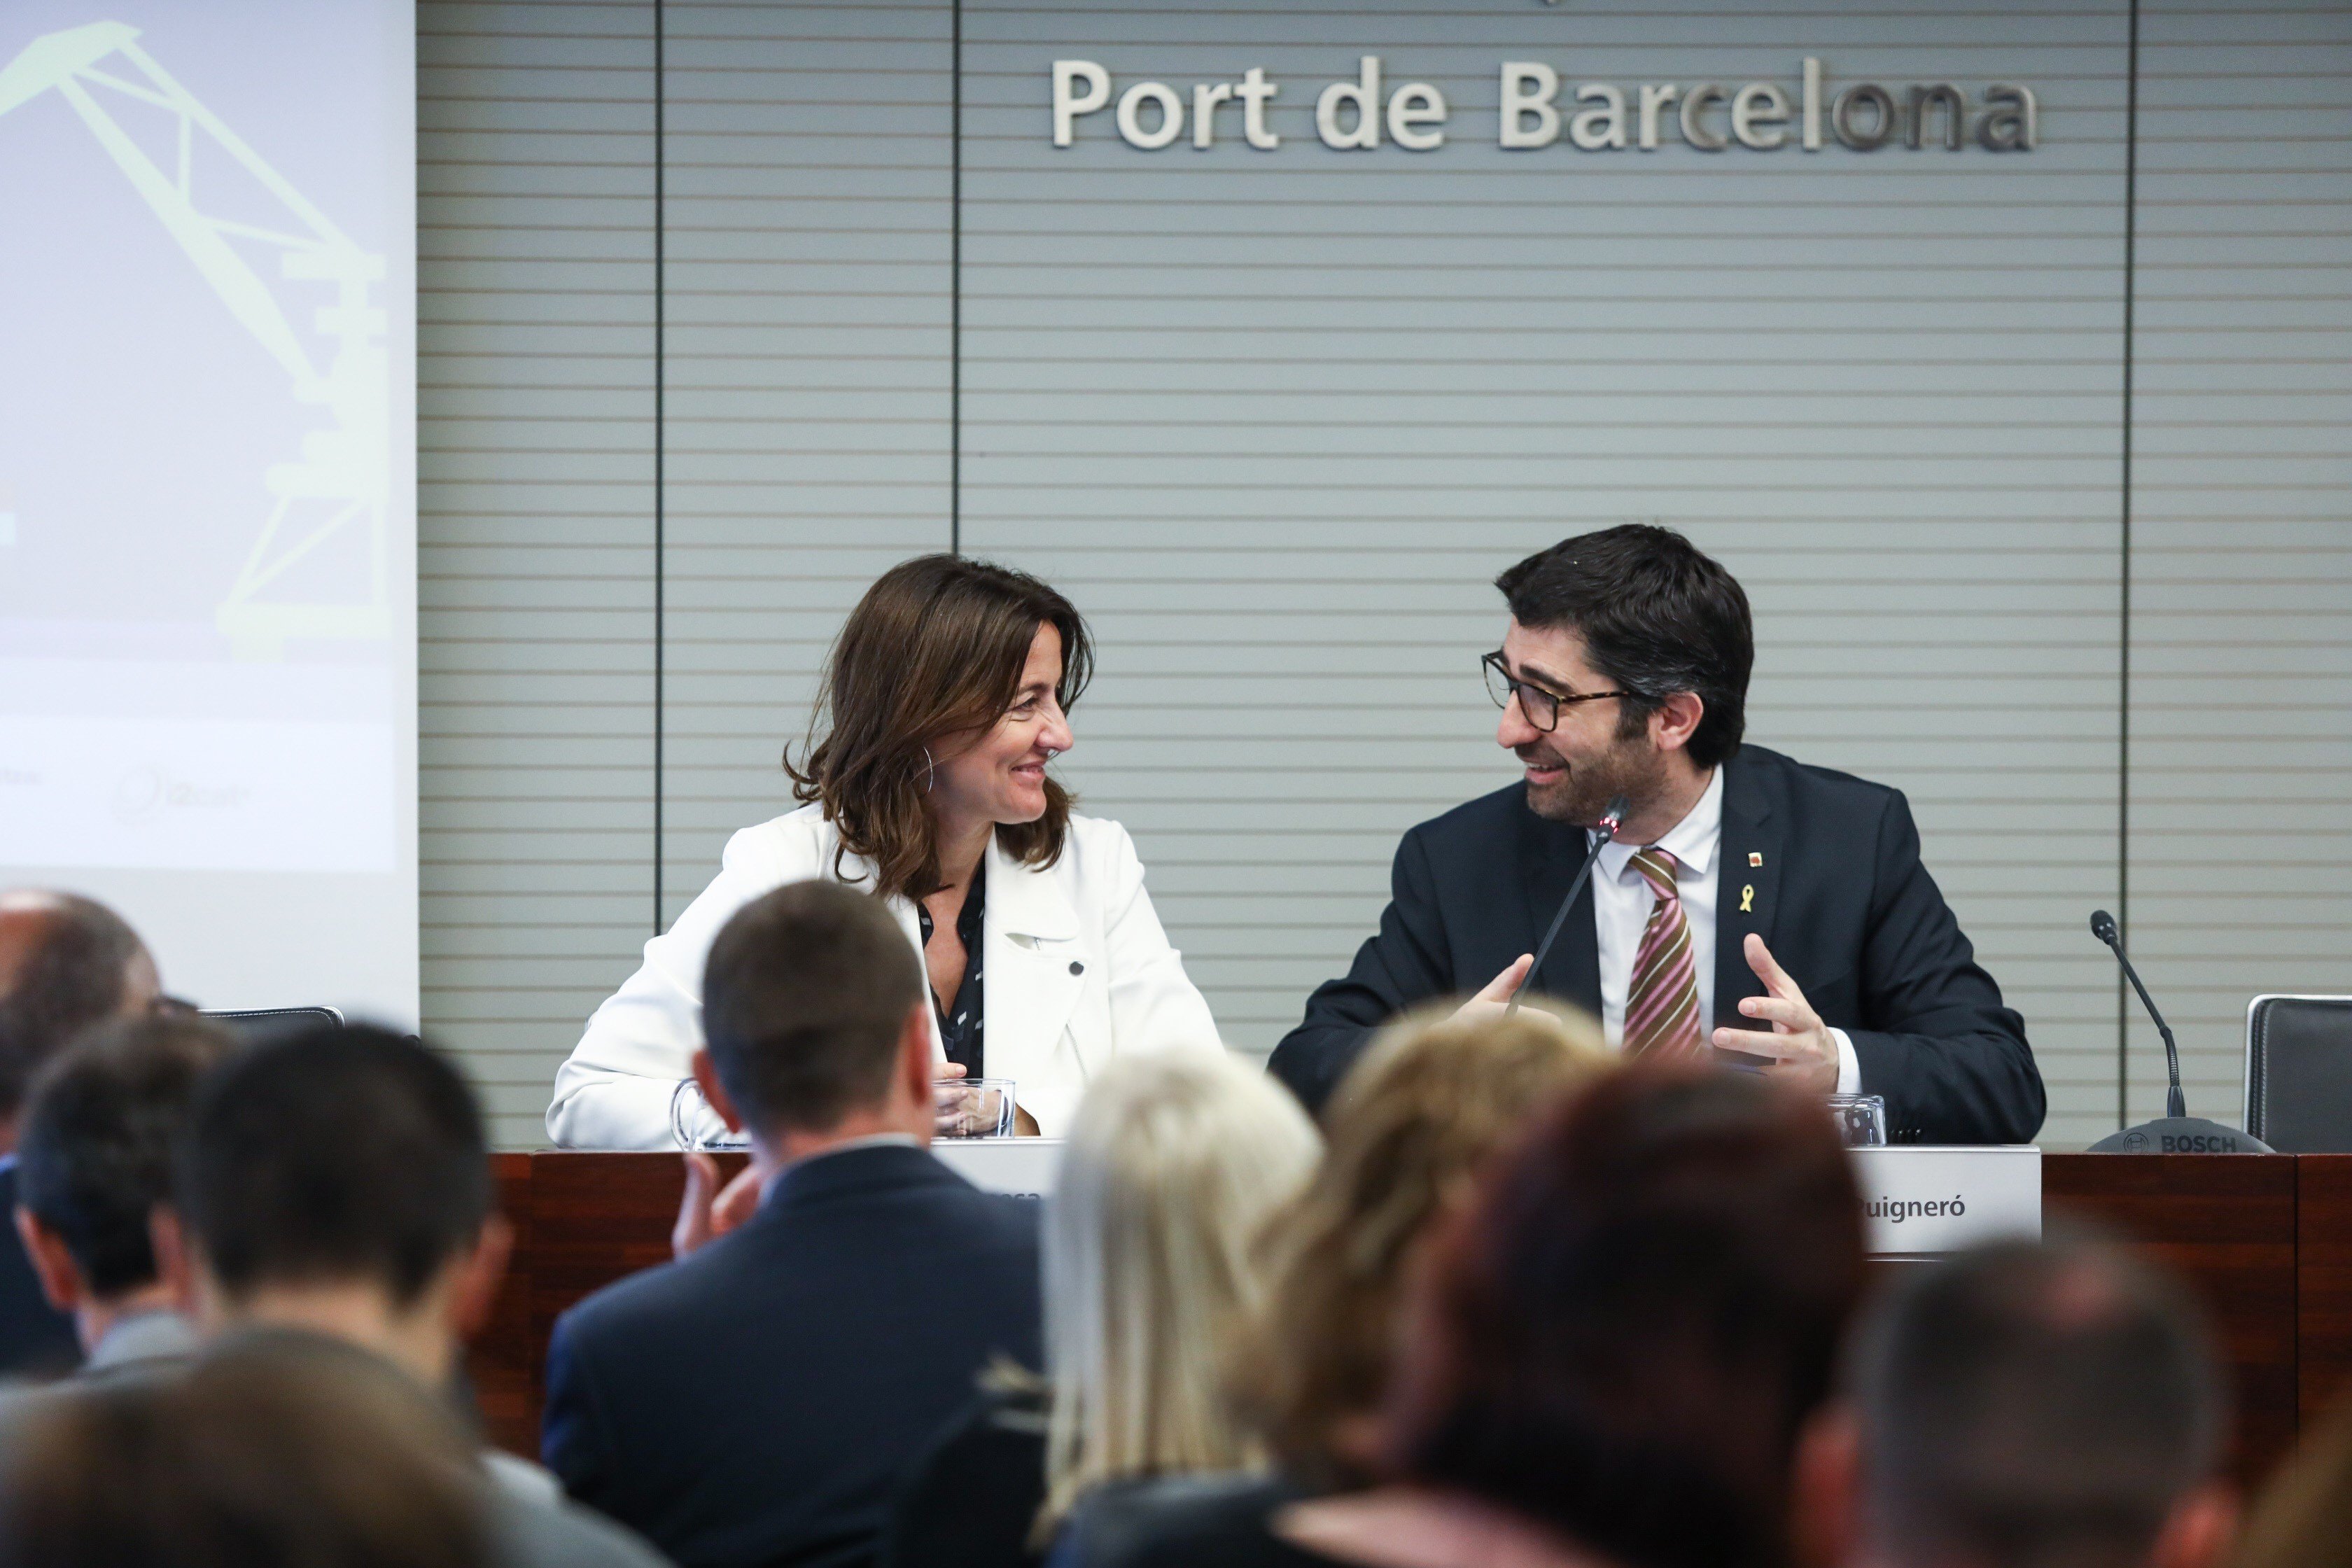 La Generalitat i el Port de Barcelona s'uneixen per fer un 'smartport' de referència